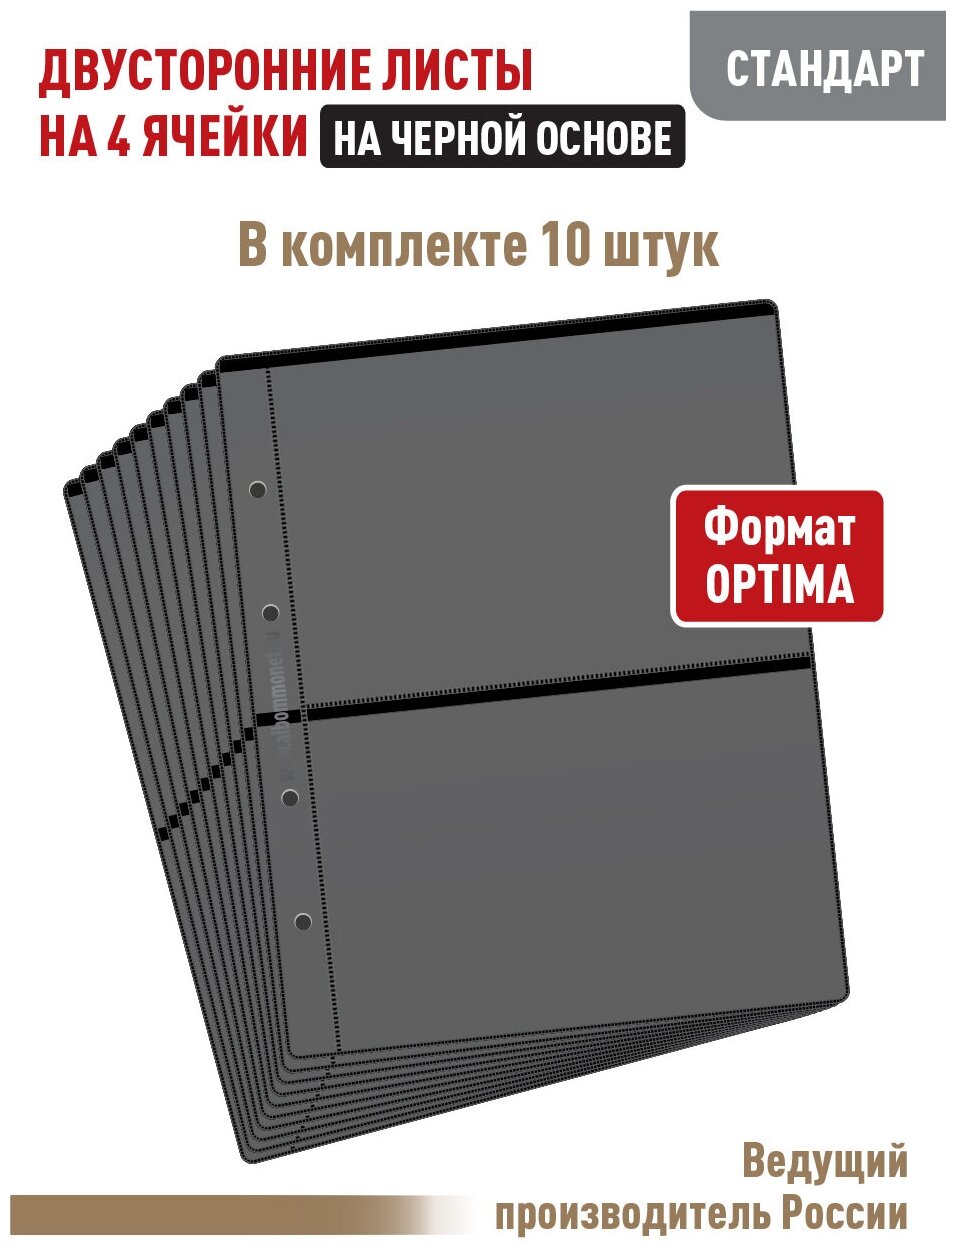 Комплект из 10 листов "стандарт" на черной основе (двусторонний) для бон (банкнот) на 4 ячейки. Формат "Optima". Размер 200х250 мм.